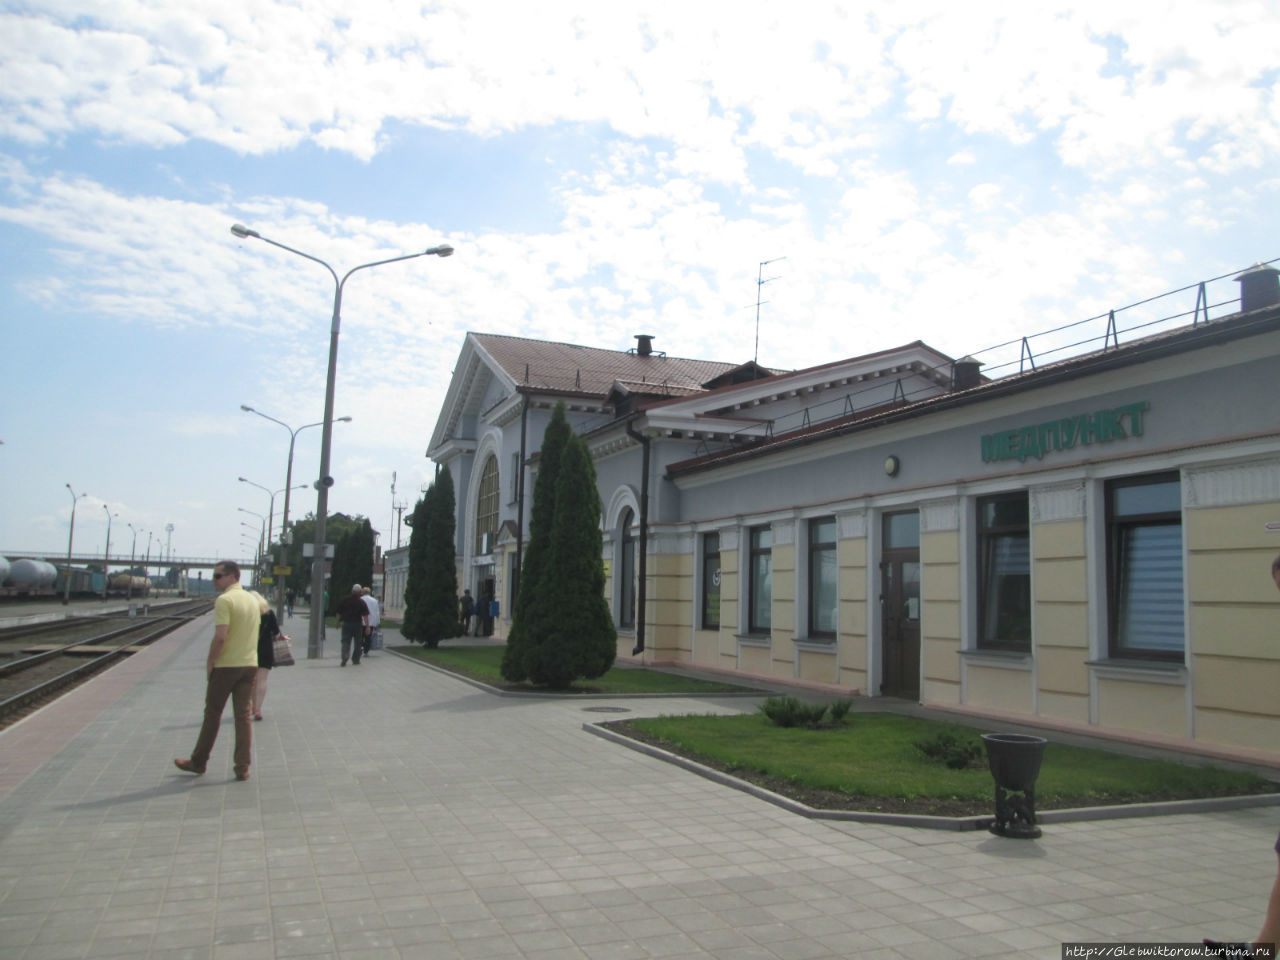 Вокзал Калинковичи / Station Kalinkovichi